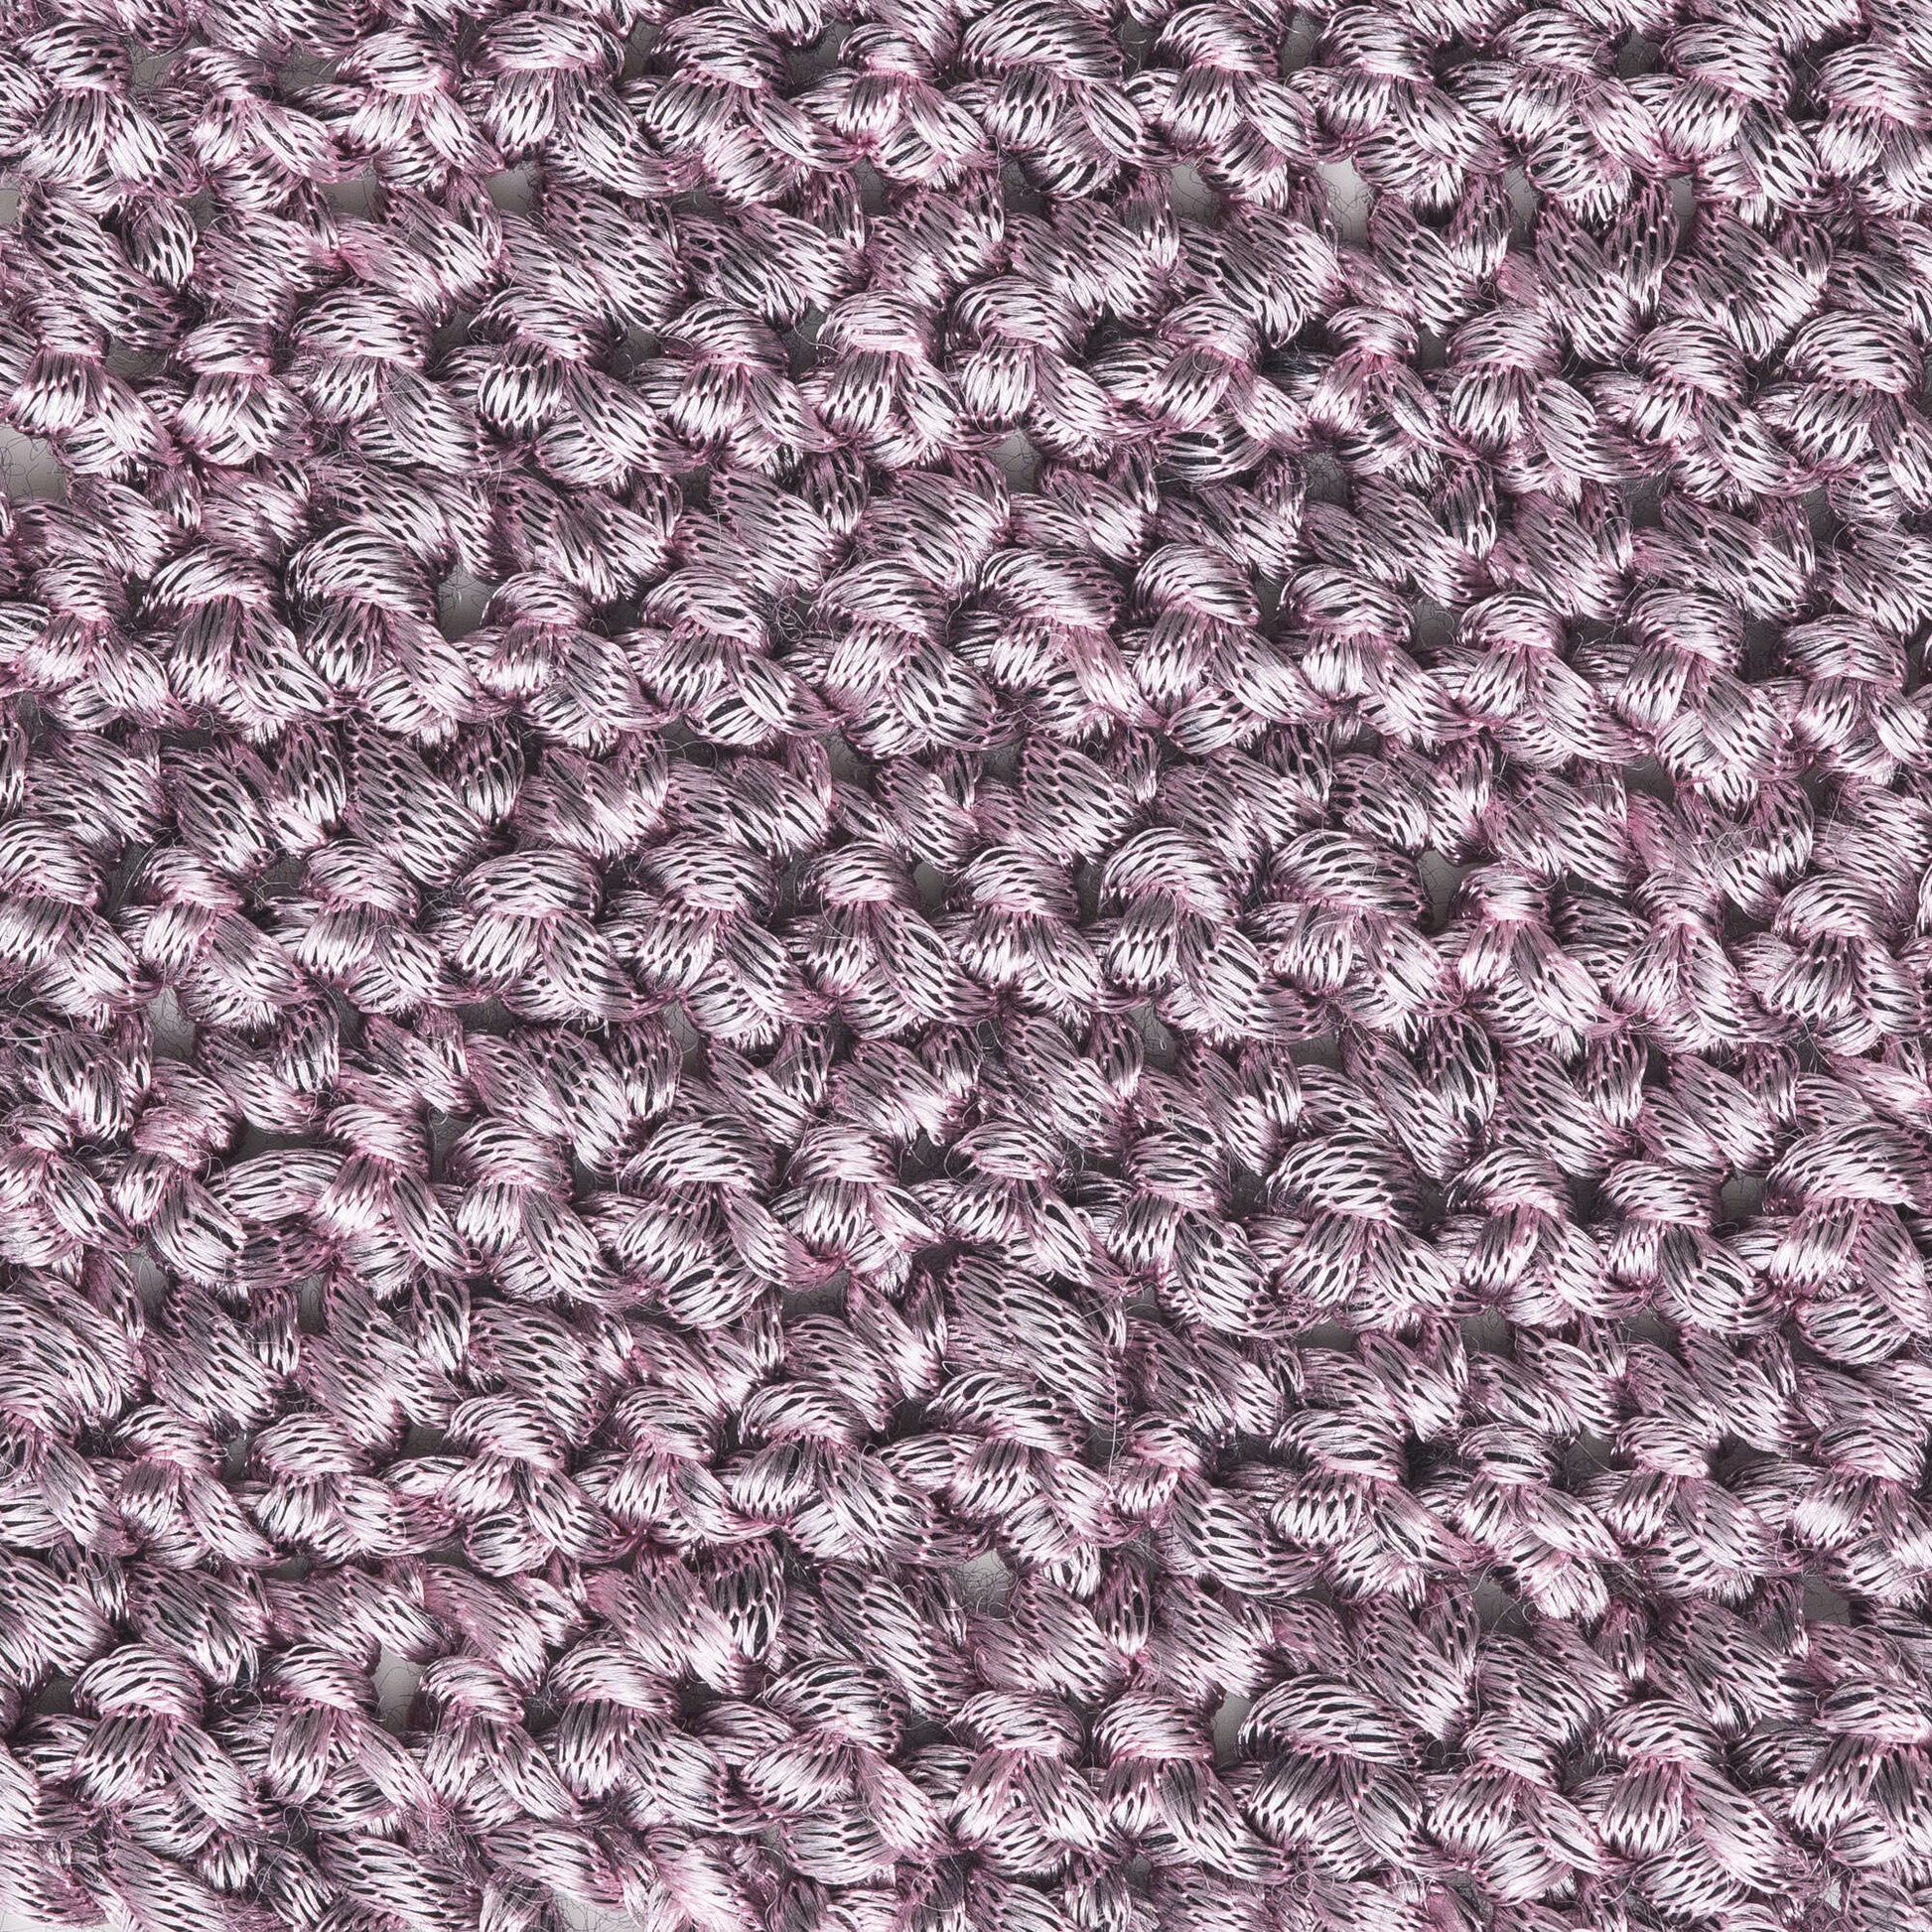 Paton's White Gold Metallic Yarn Knit Crochet 09008 Yarnspirations 2.1 oz  NEW